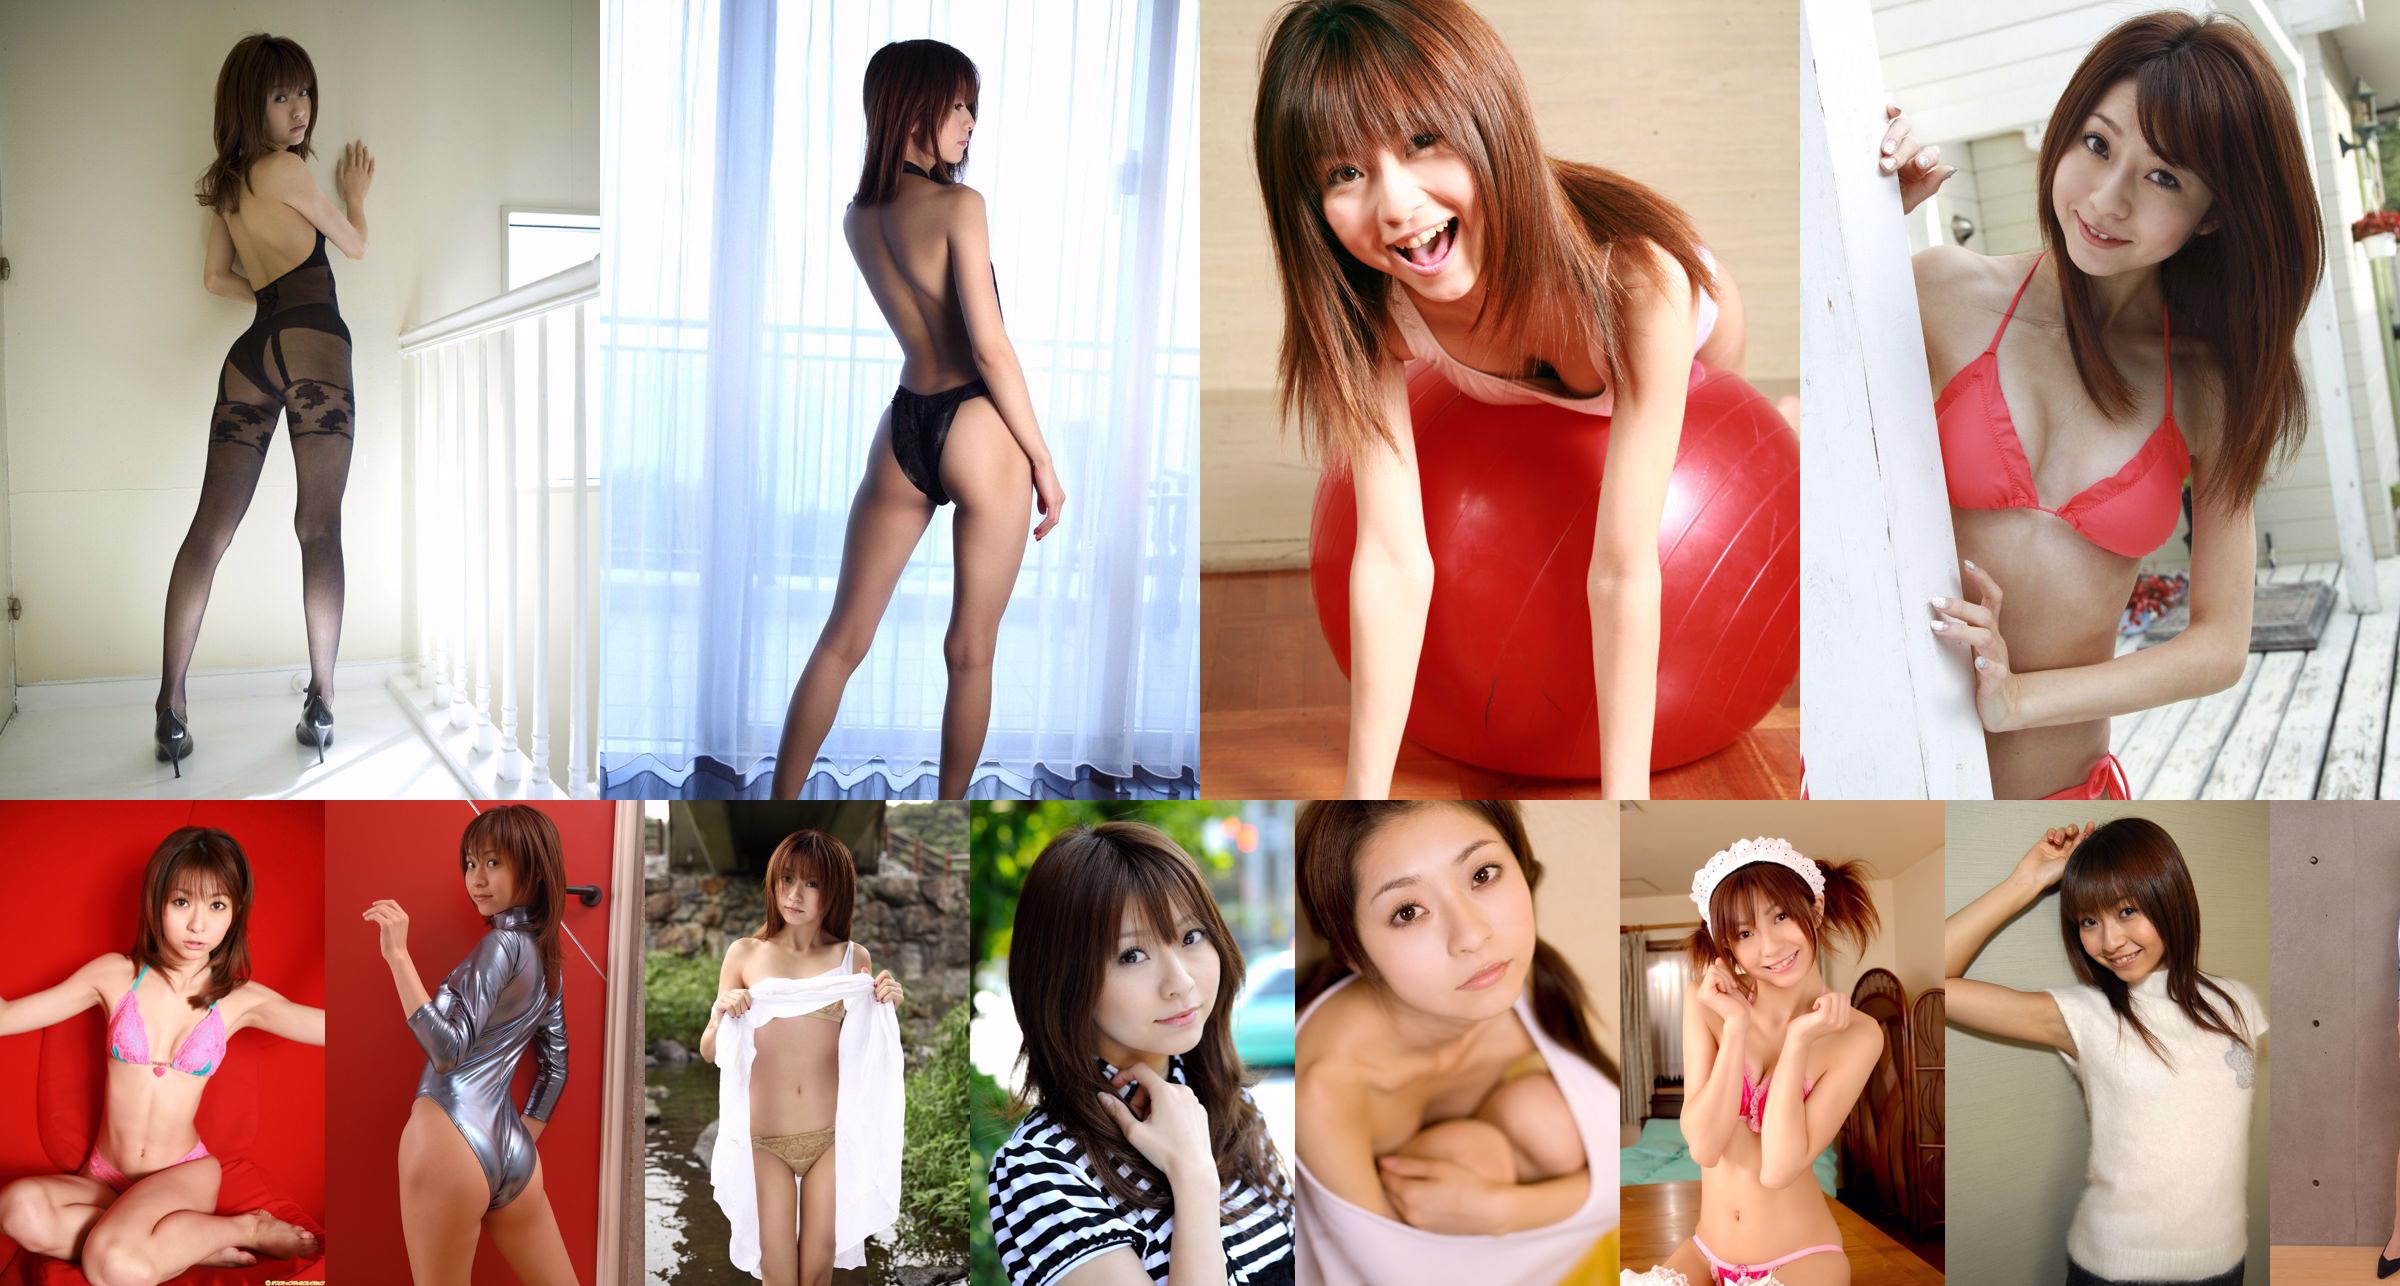 [BWH] BWH0144 Orihara Misaki "Prise de vue en studio avec une jolie fille" No.34e390 Page 1